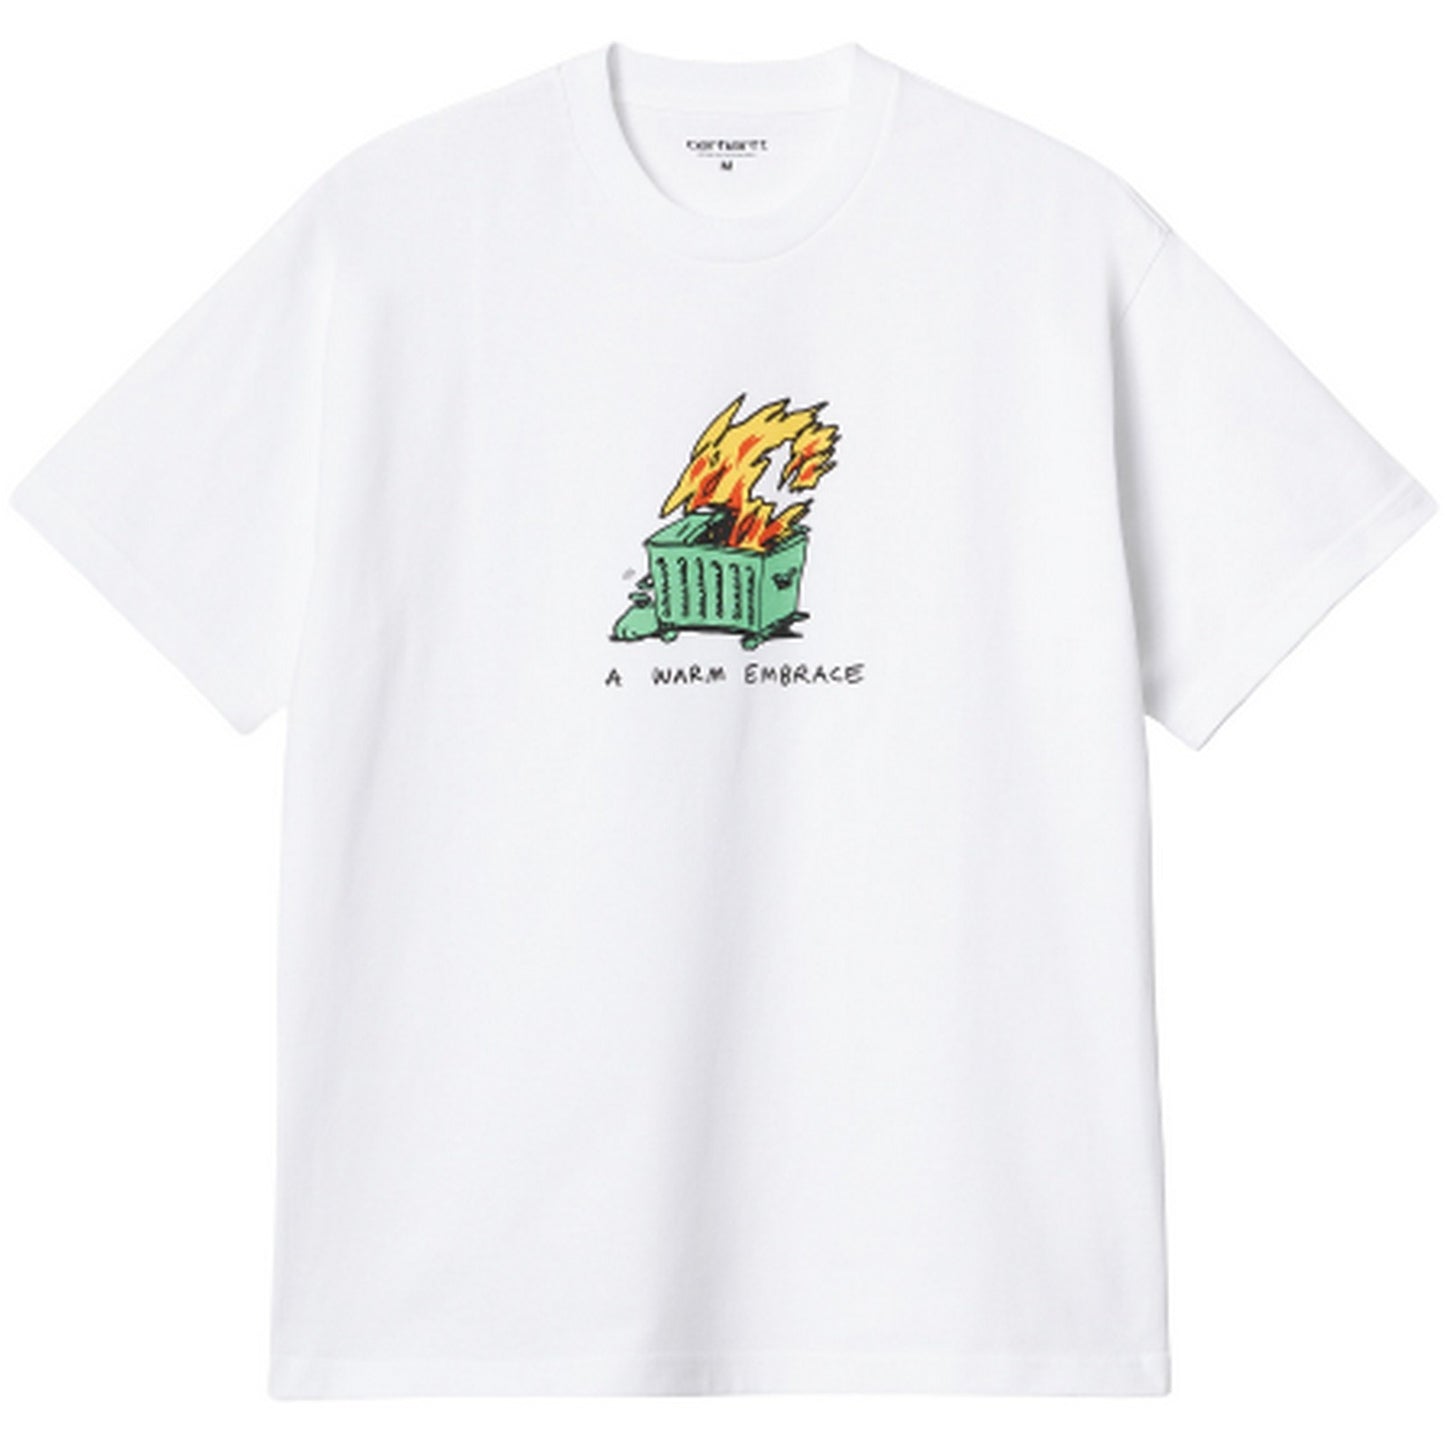 T-shirt Uomo Carhartt Wip - S/S Warm Embrace T-Shirt - Bianco